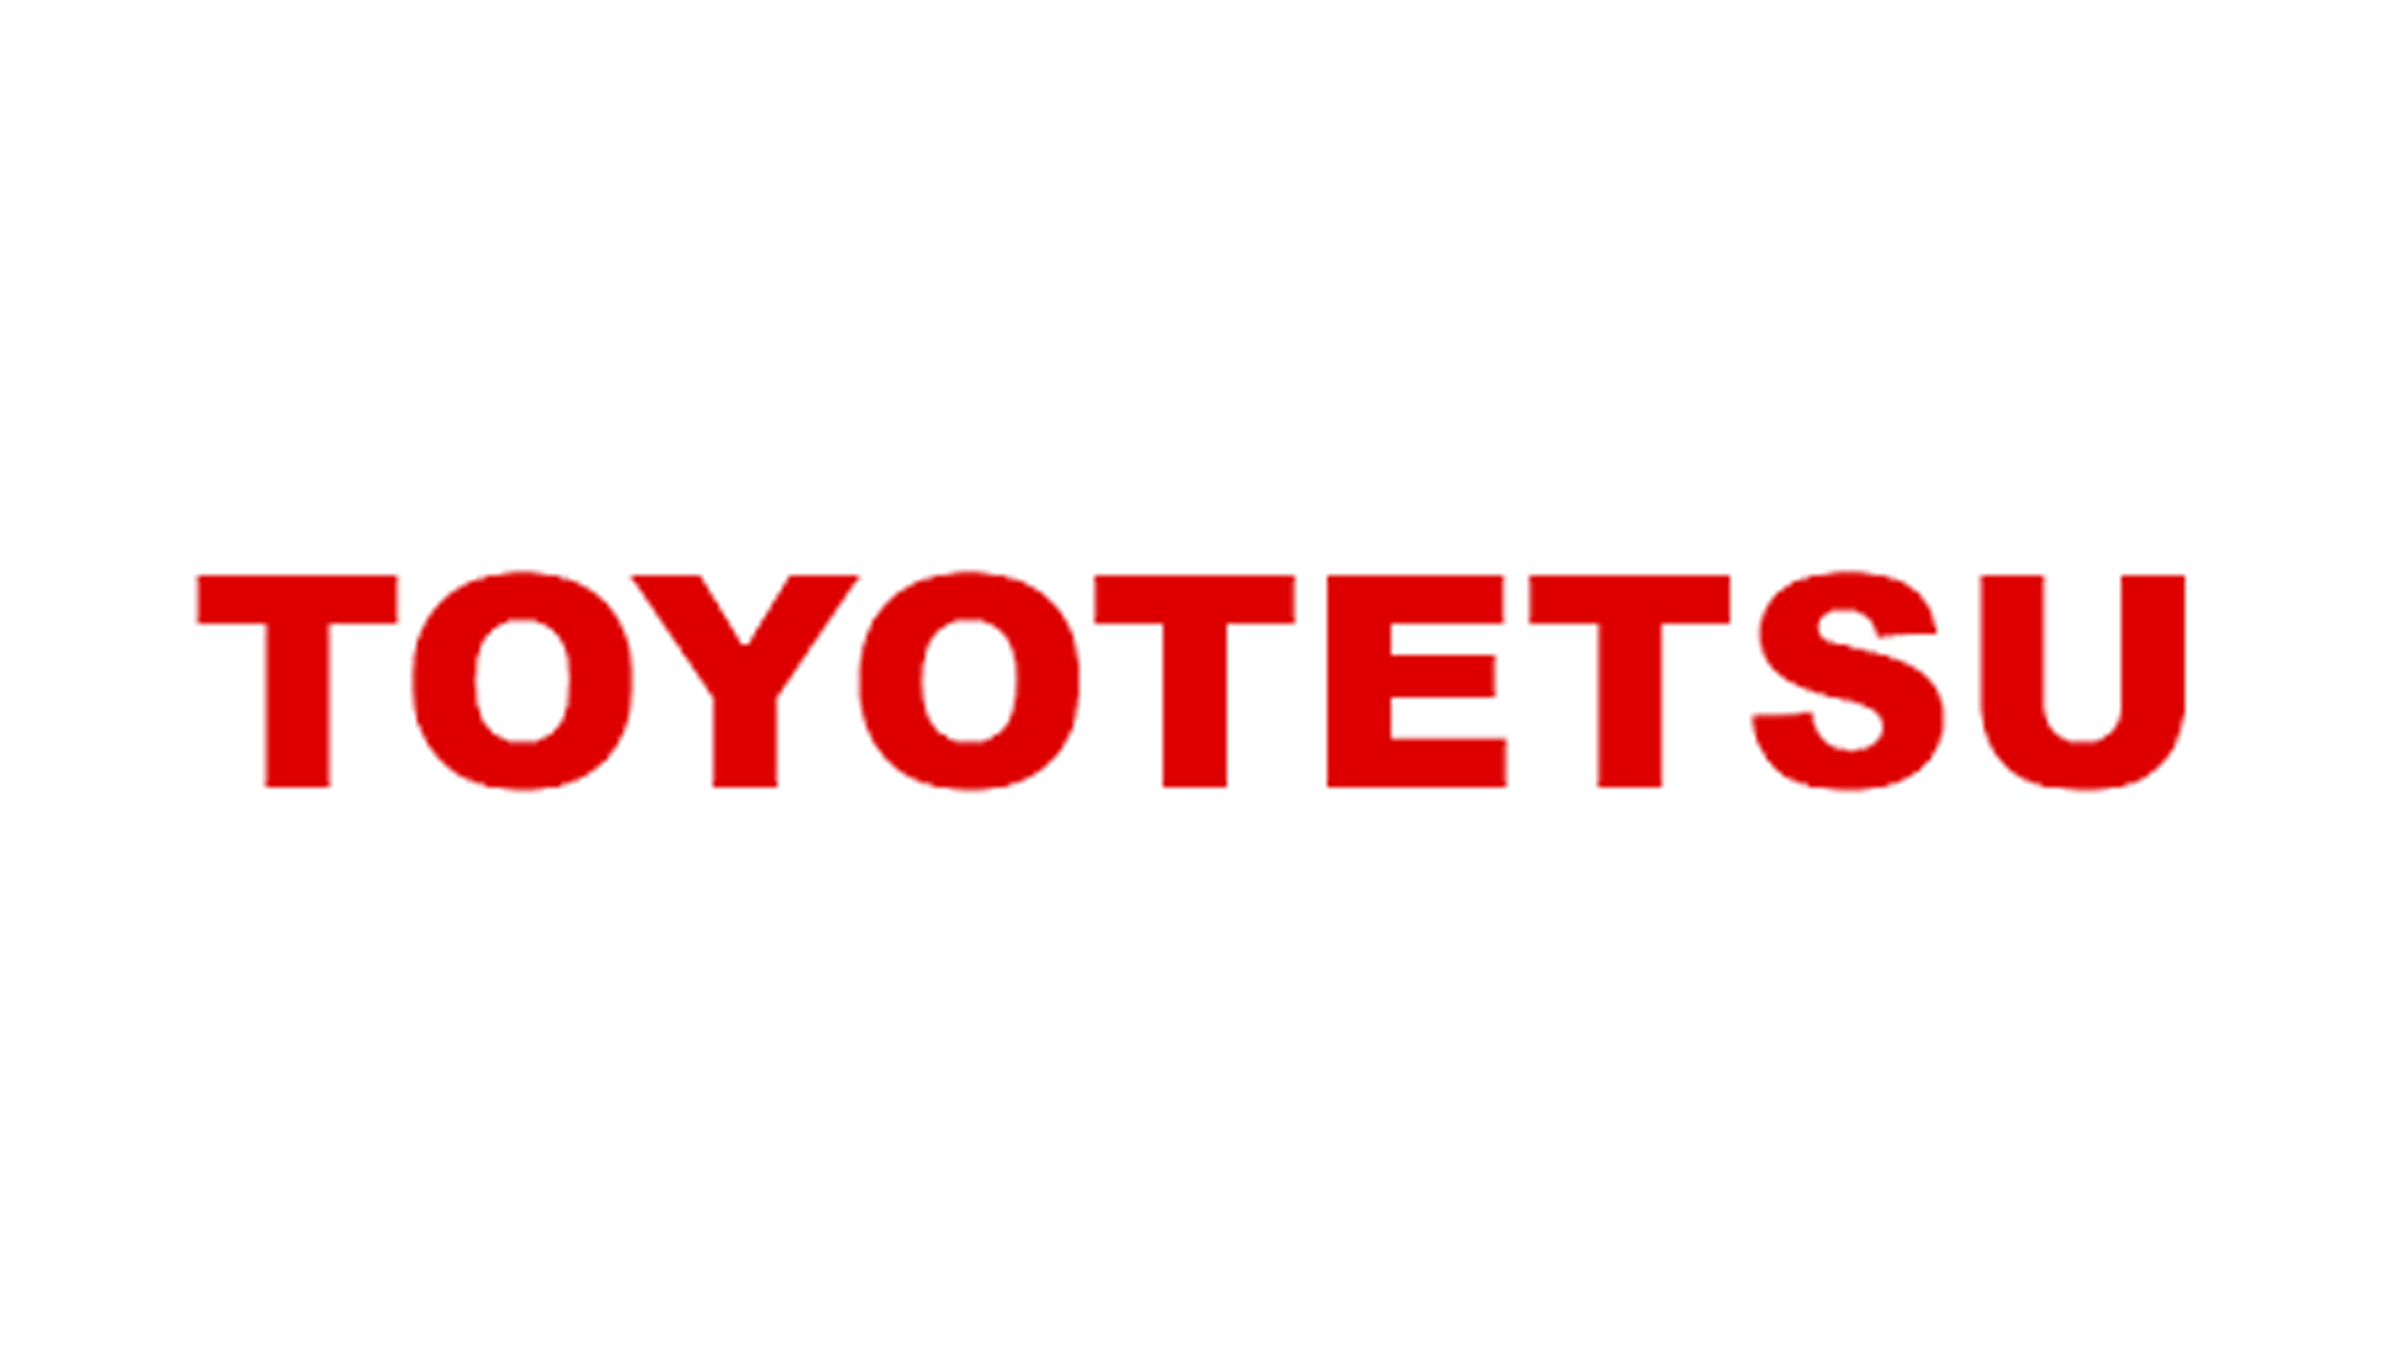 toyotetsu company logo